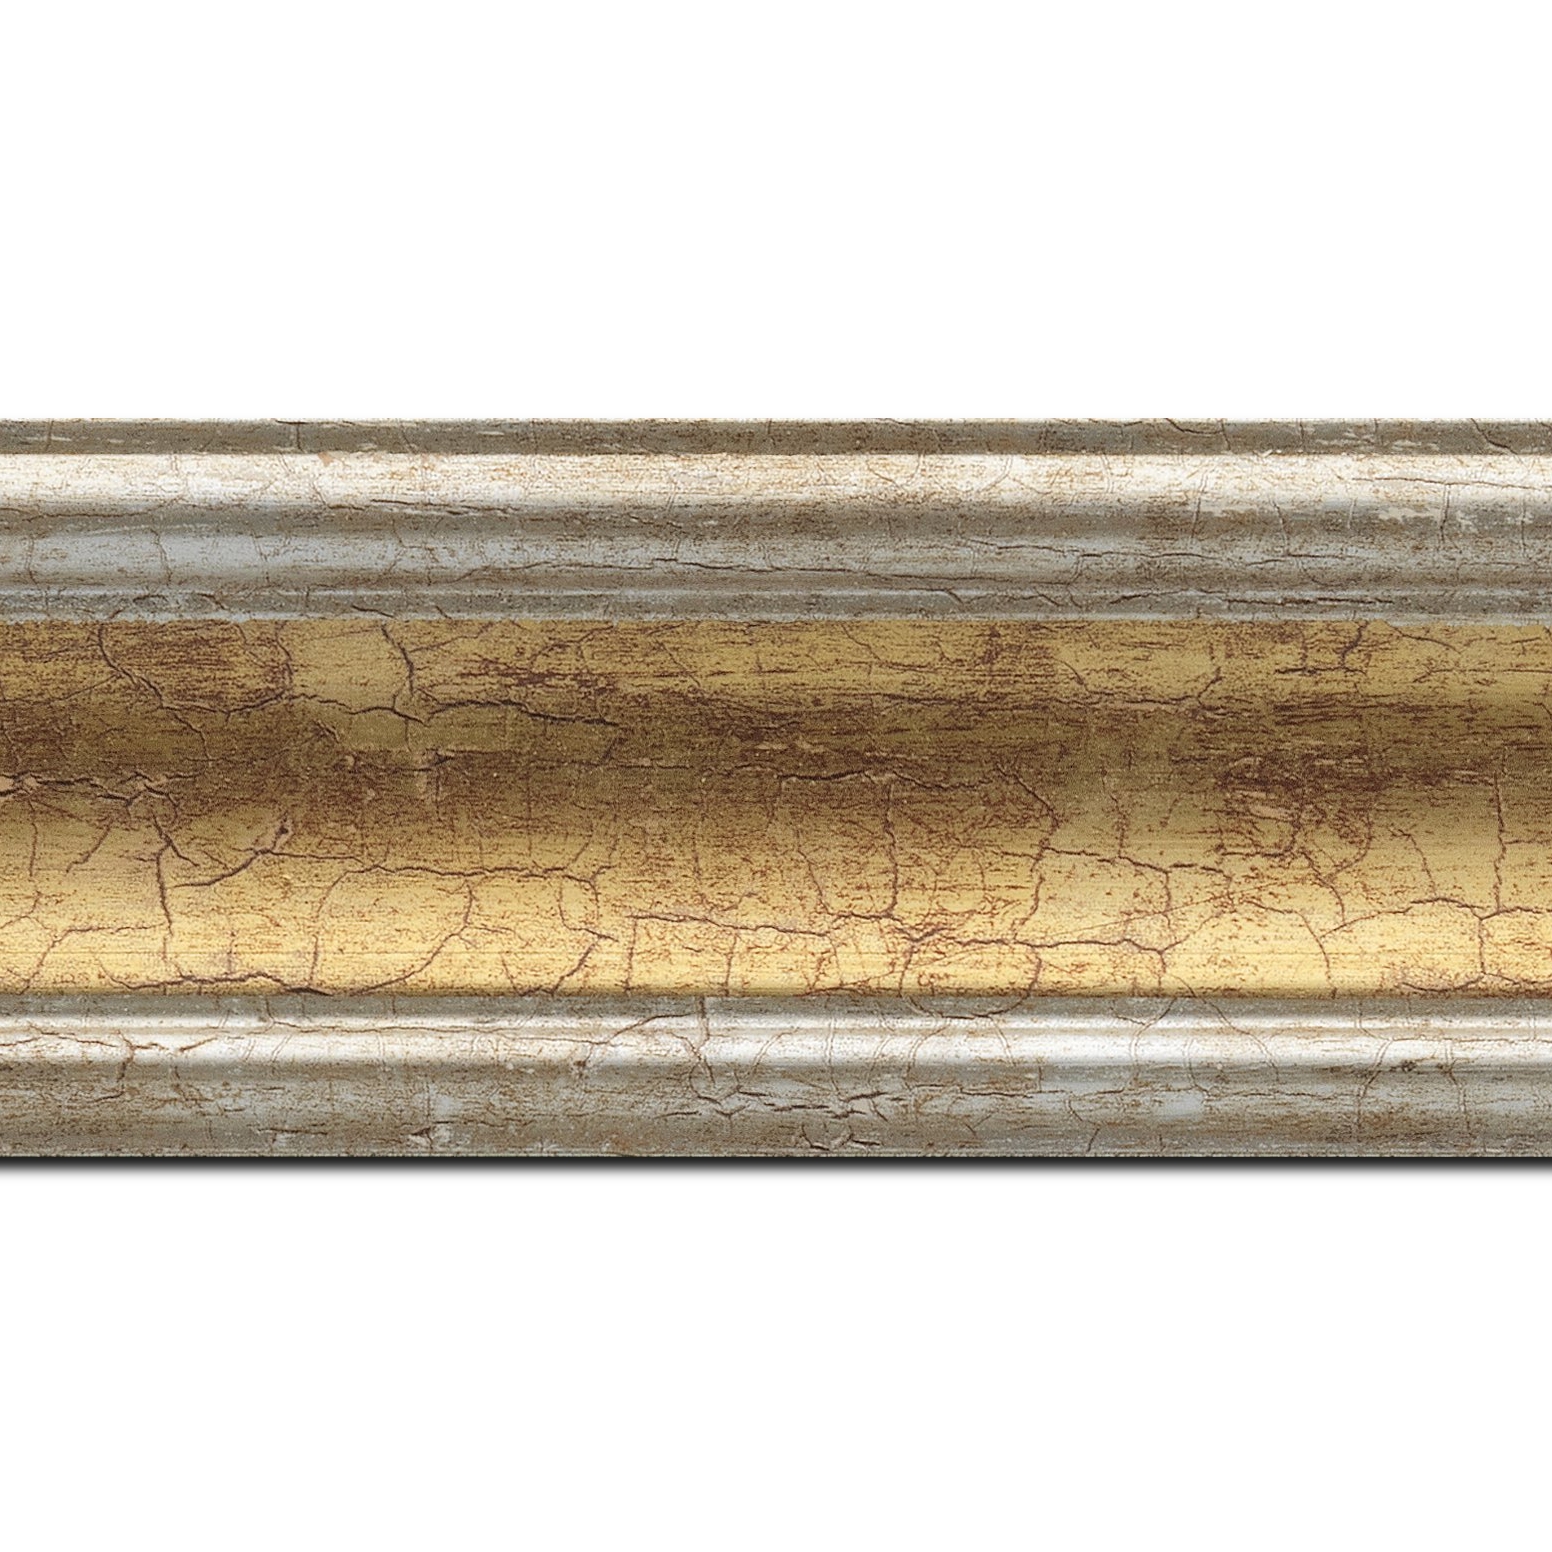 Baguette longueur 1.40m bois profil incurvé largeur 7cm gorge or craquelé bord argent chaud craquelé